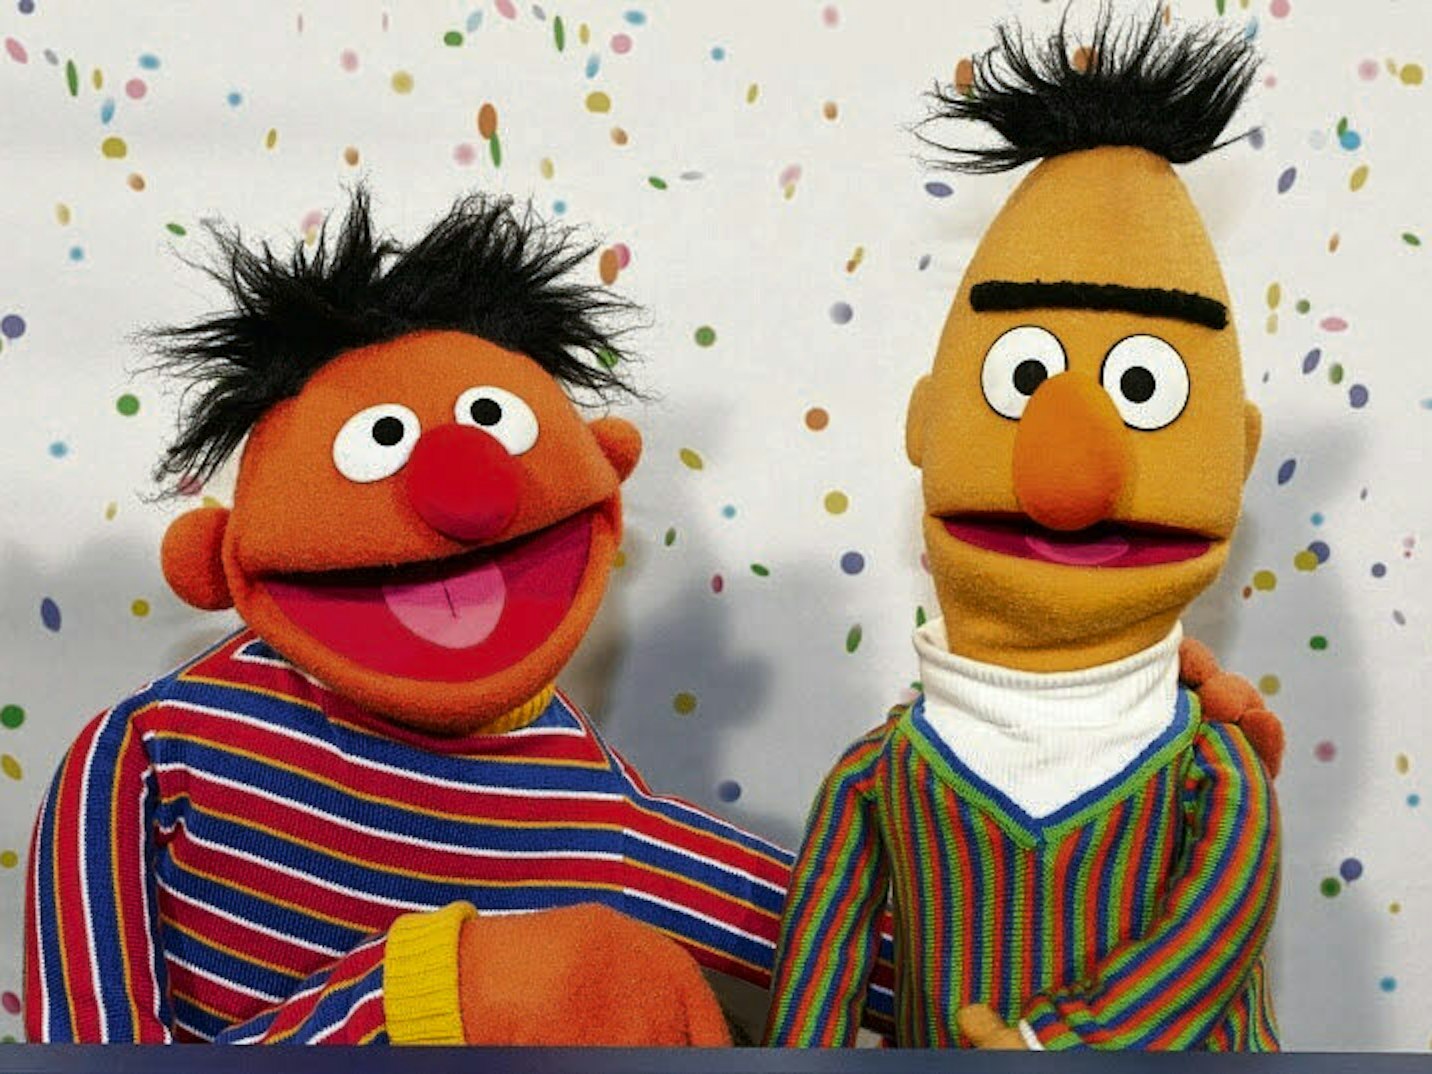 Eines der größten Comedy-Duos aller Zeiten: Ernie und Bert aus der Sesamstraße